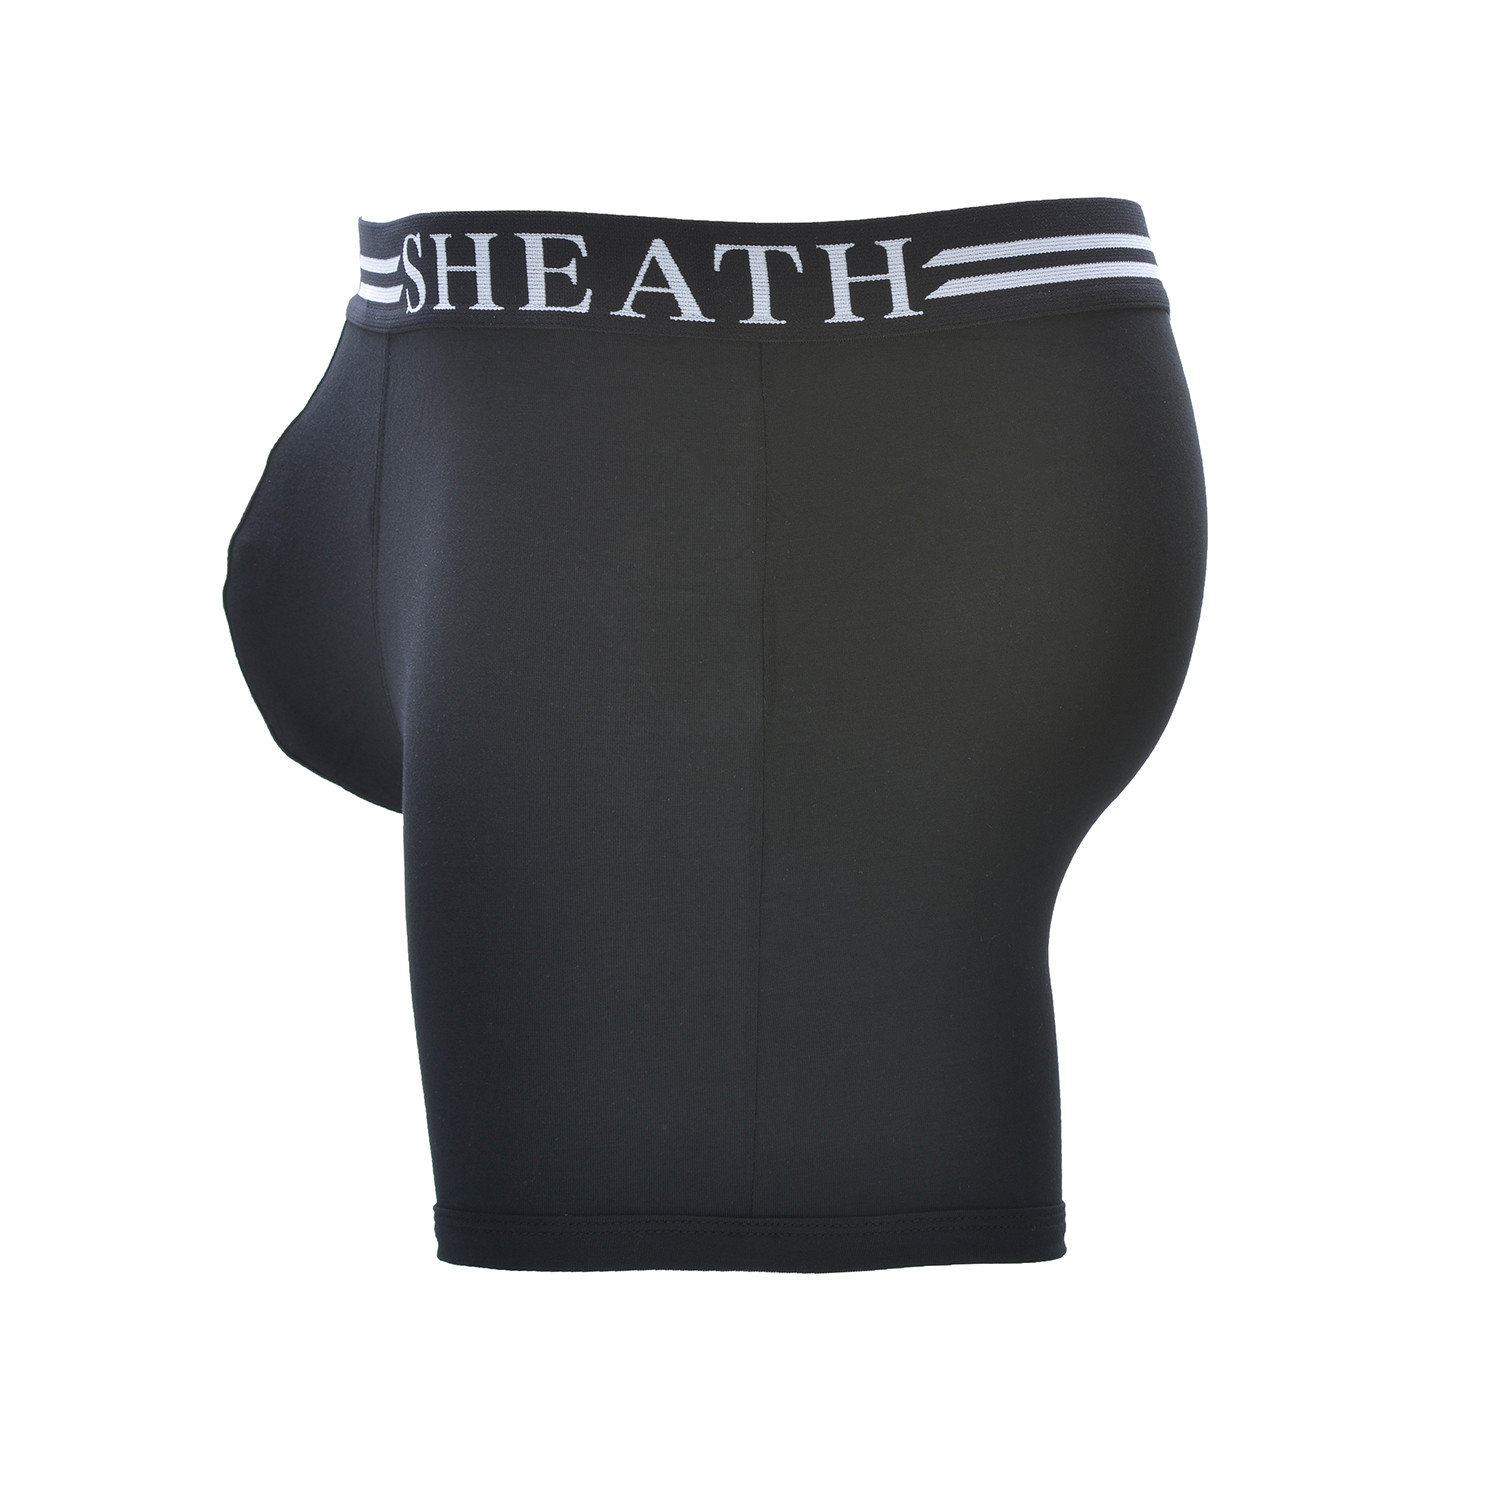 SHEATH Men's Dual Pouch Brief // Gold & White (XXX Large) - Sheath